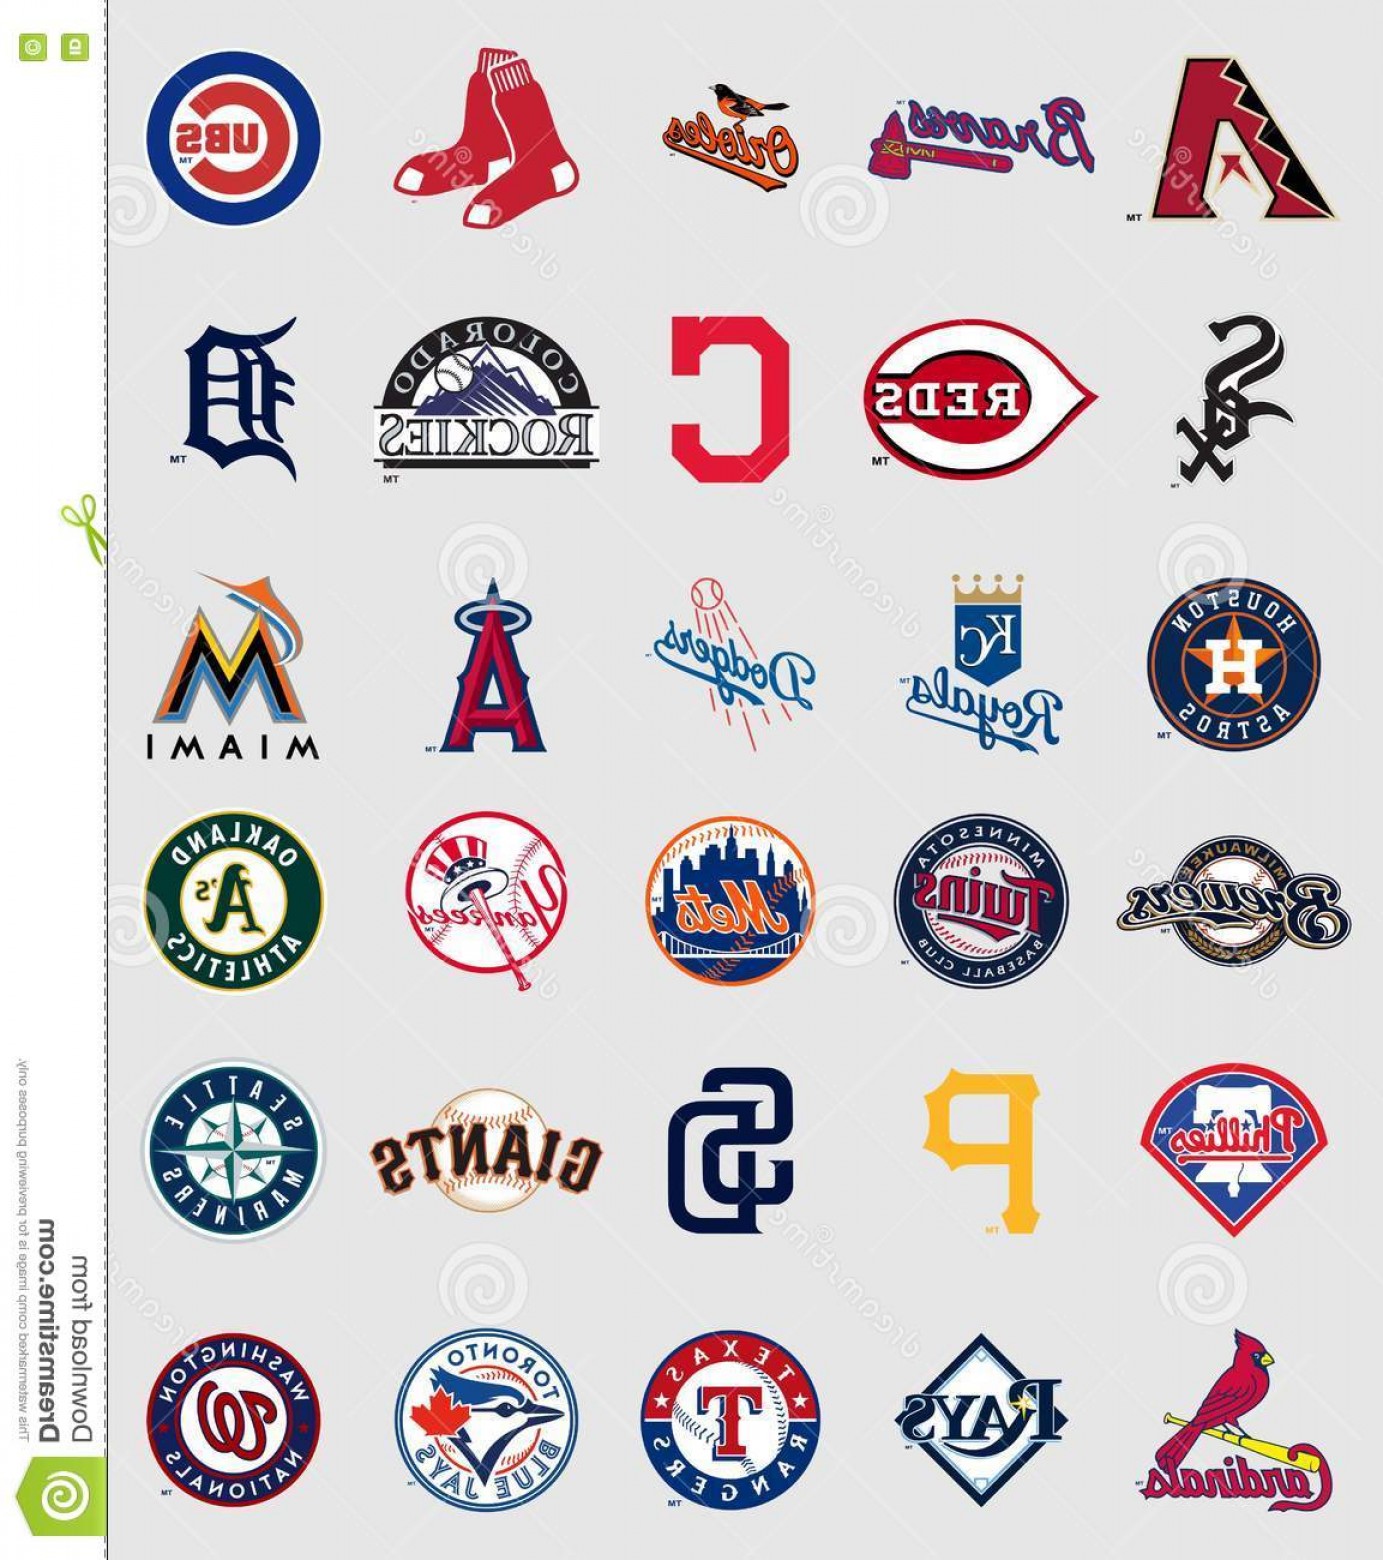 Major League Baseball Logo Vector at Vectorified.com | Collection of ...